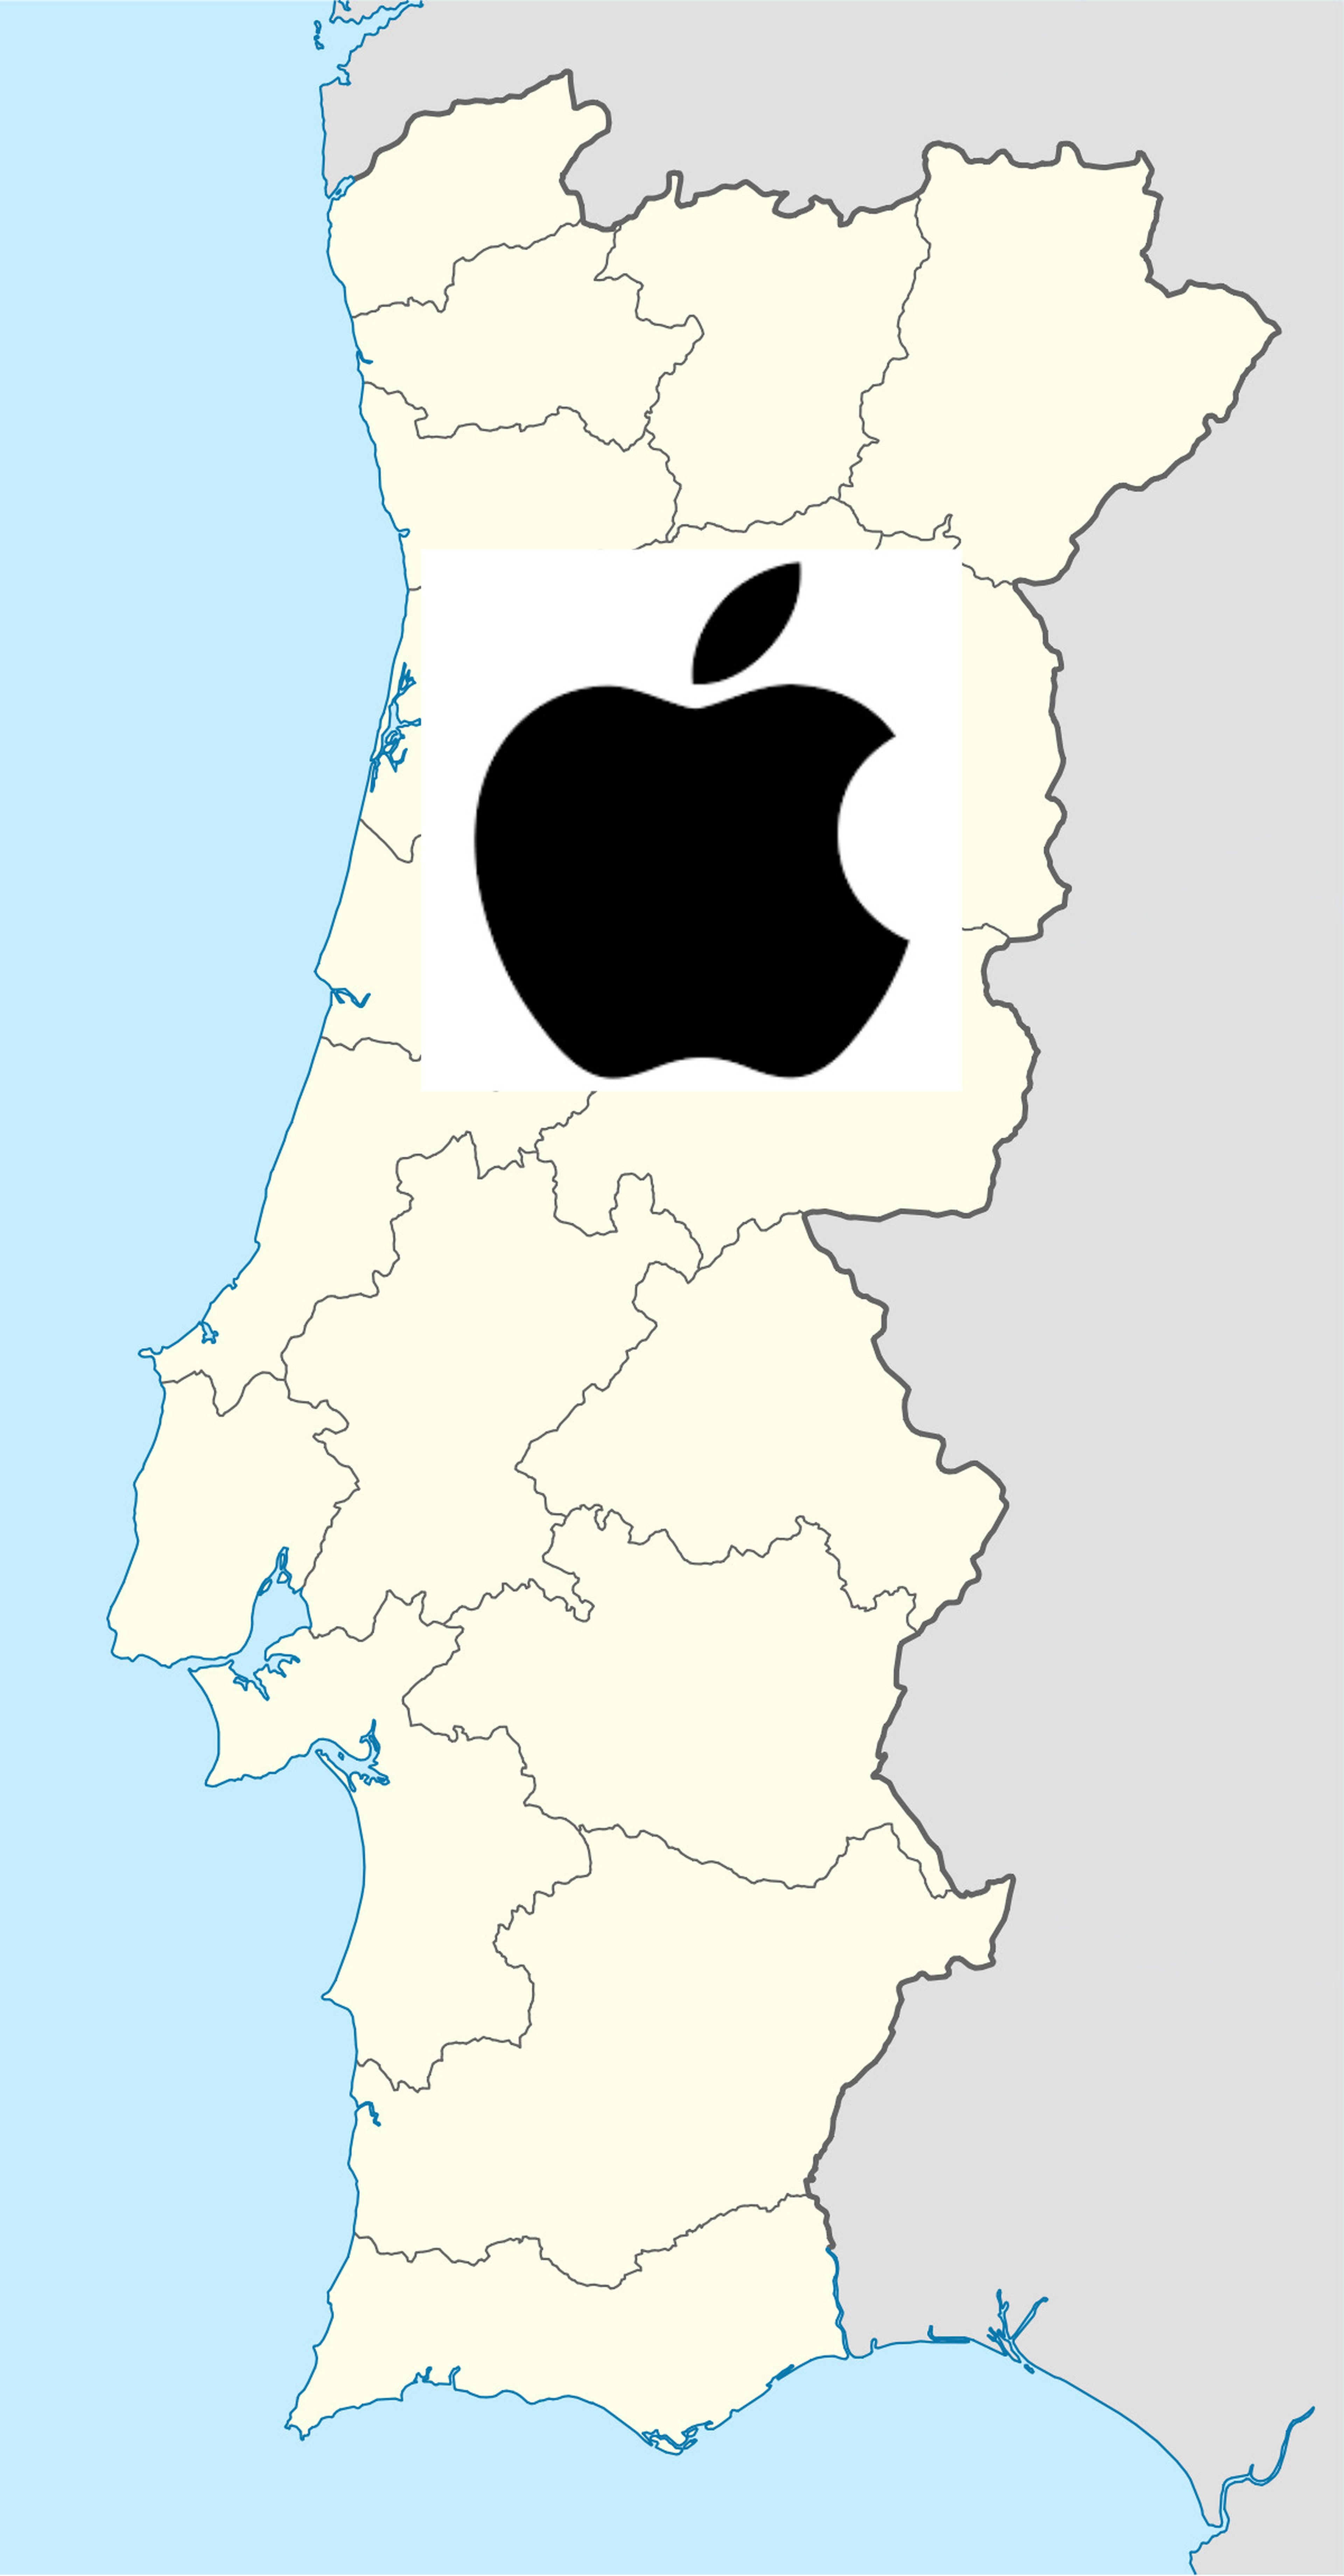 Portugal Apple